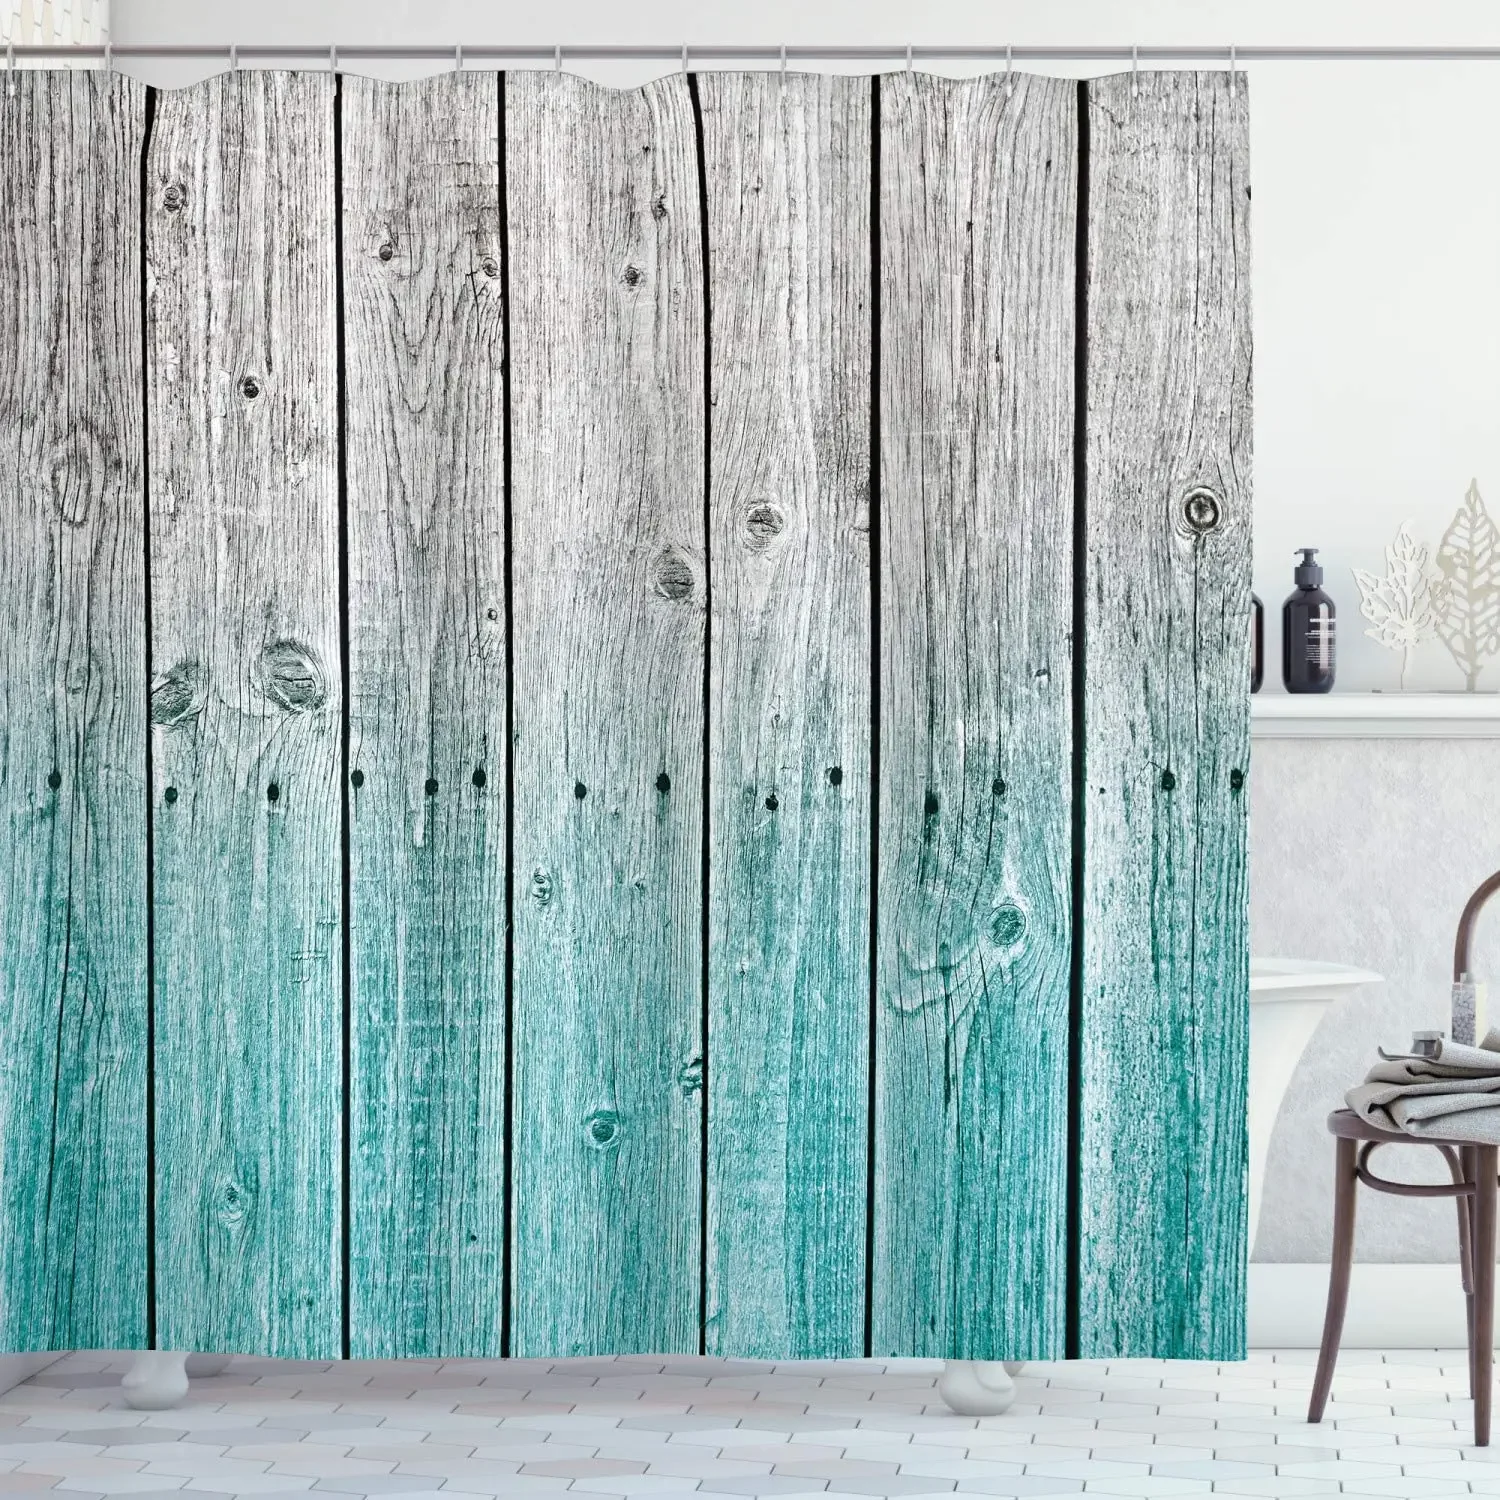 

Занавески для душа в деревенском стиле, тканевые художественные шторы с крючками, с эффектом фона, для загородного дома, набор для декора ванной комнаты, бледно-голубой и серый